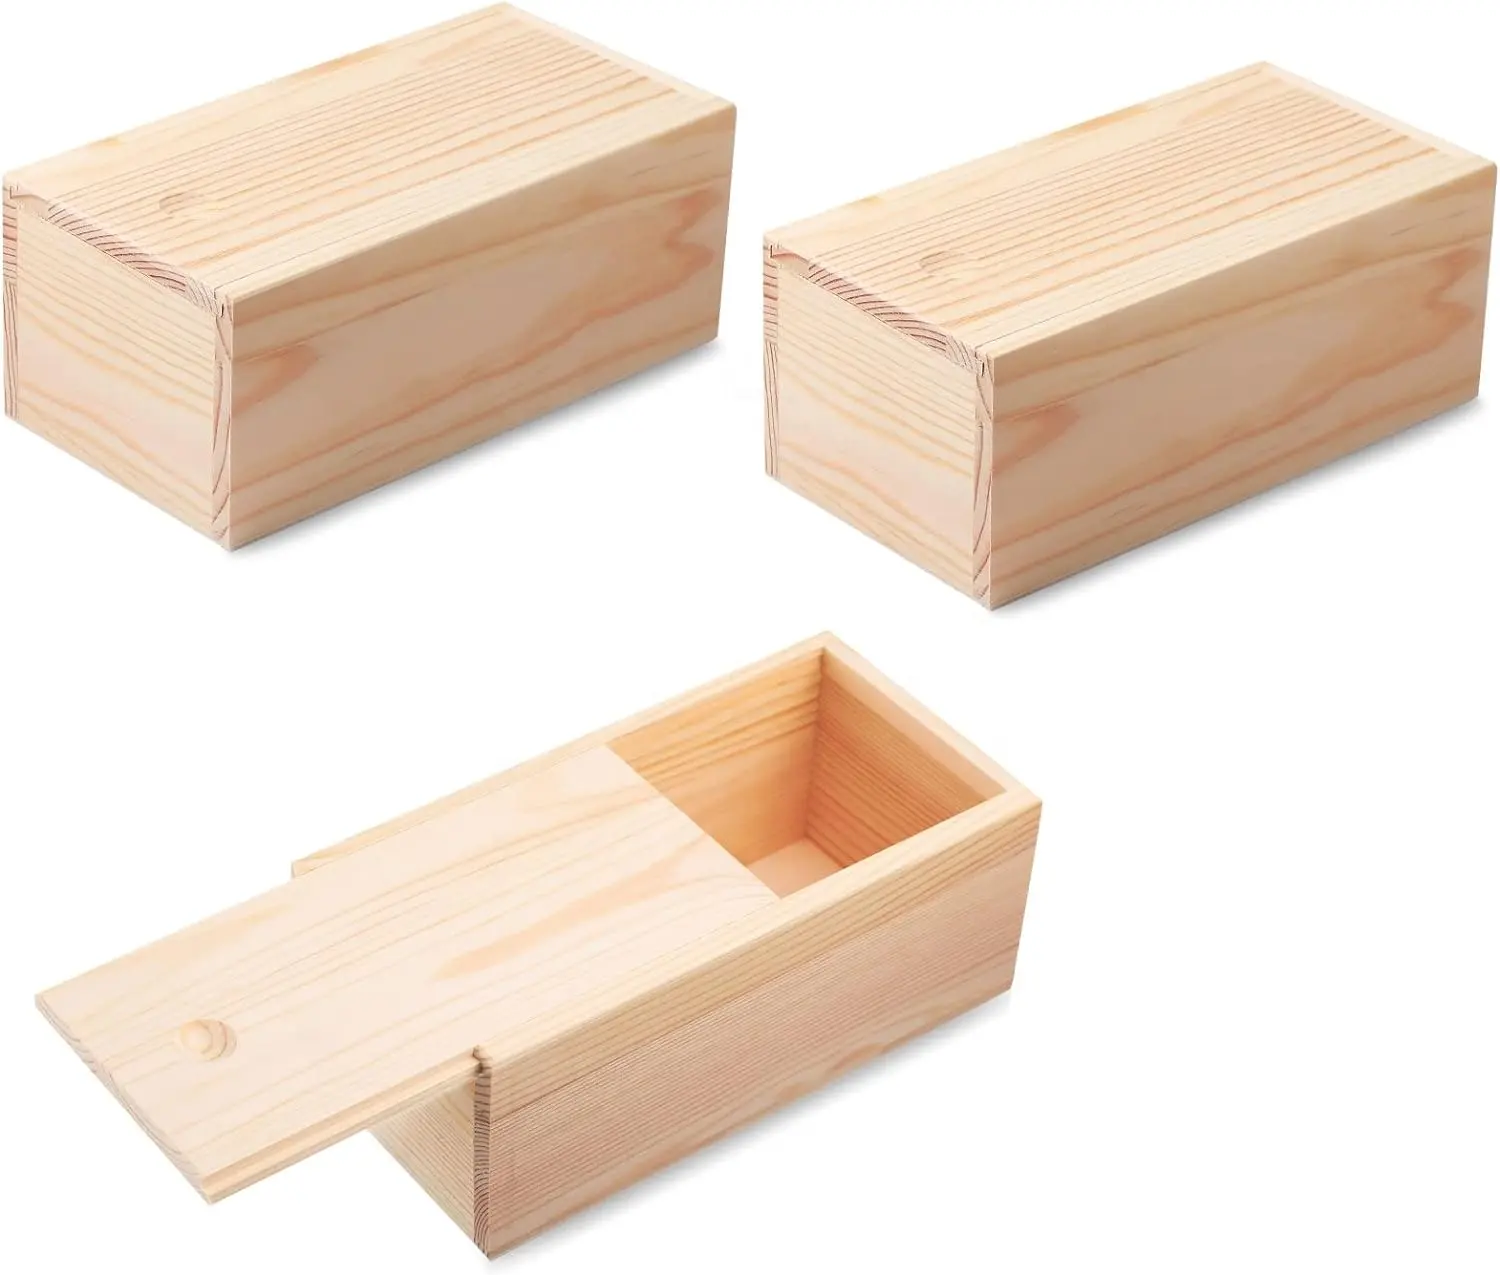 صندوق خشبي مبتكر غير مكتمل مع صناديق خشبية مربعة لتخزين المجوهرات صناعة يدوية